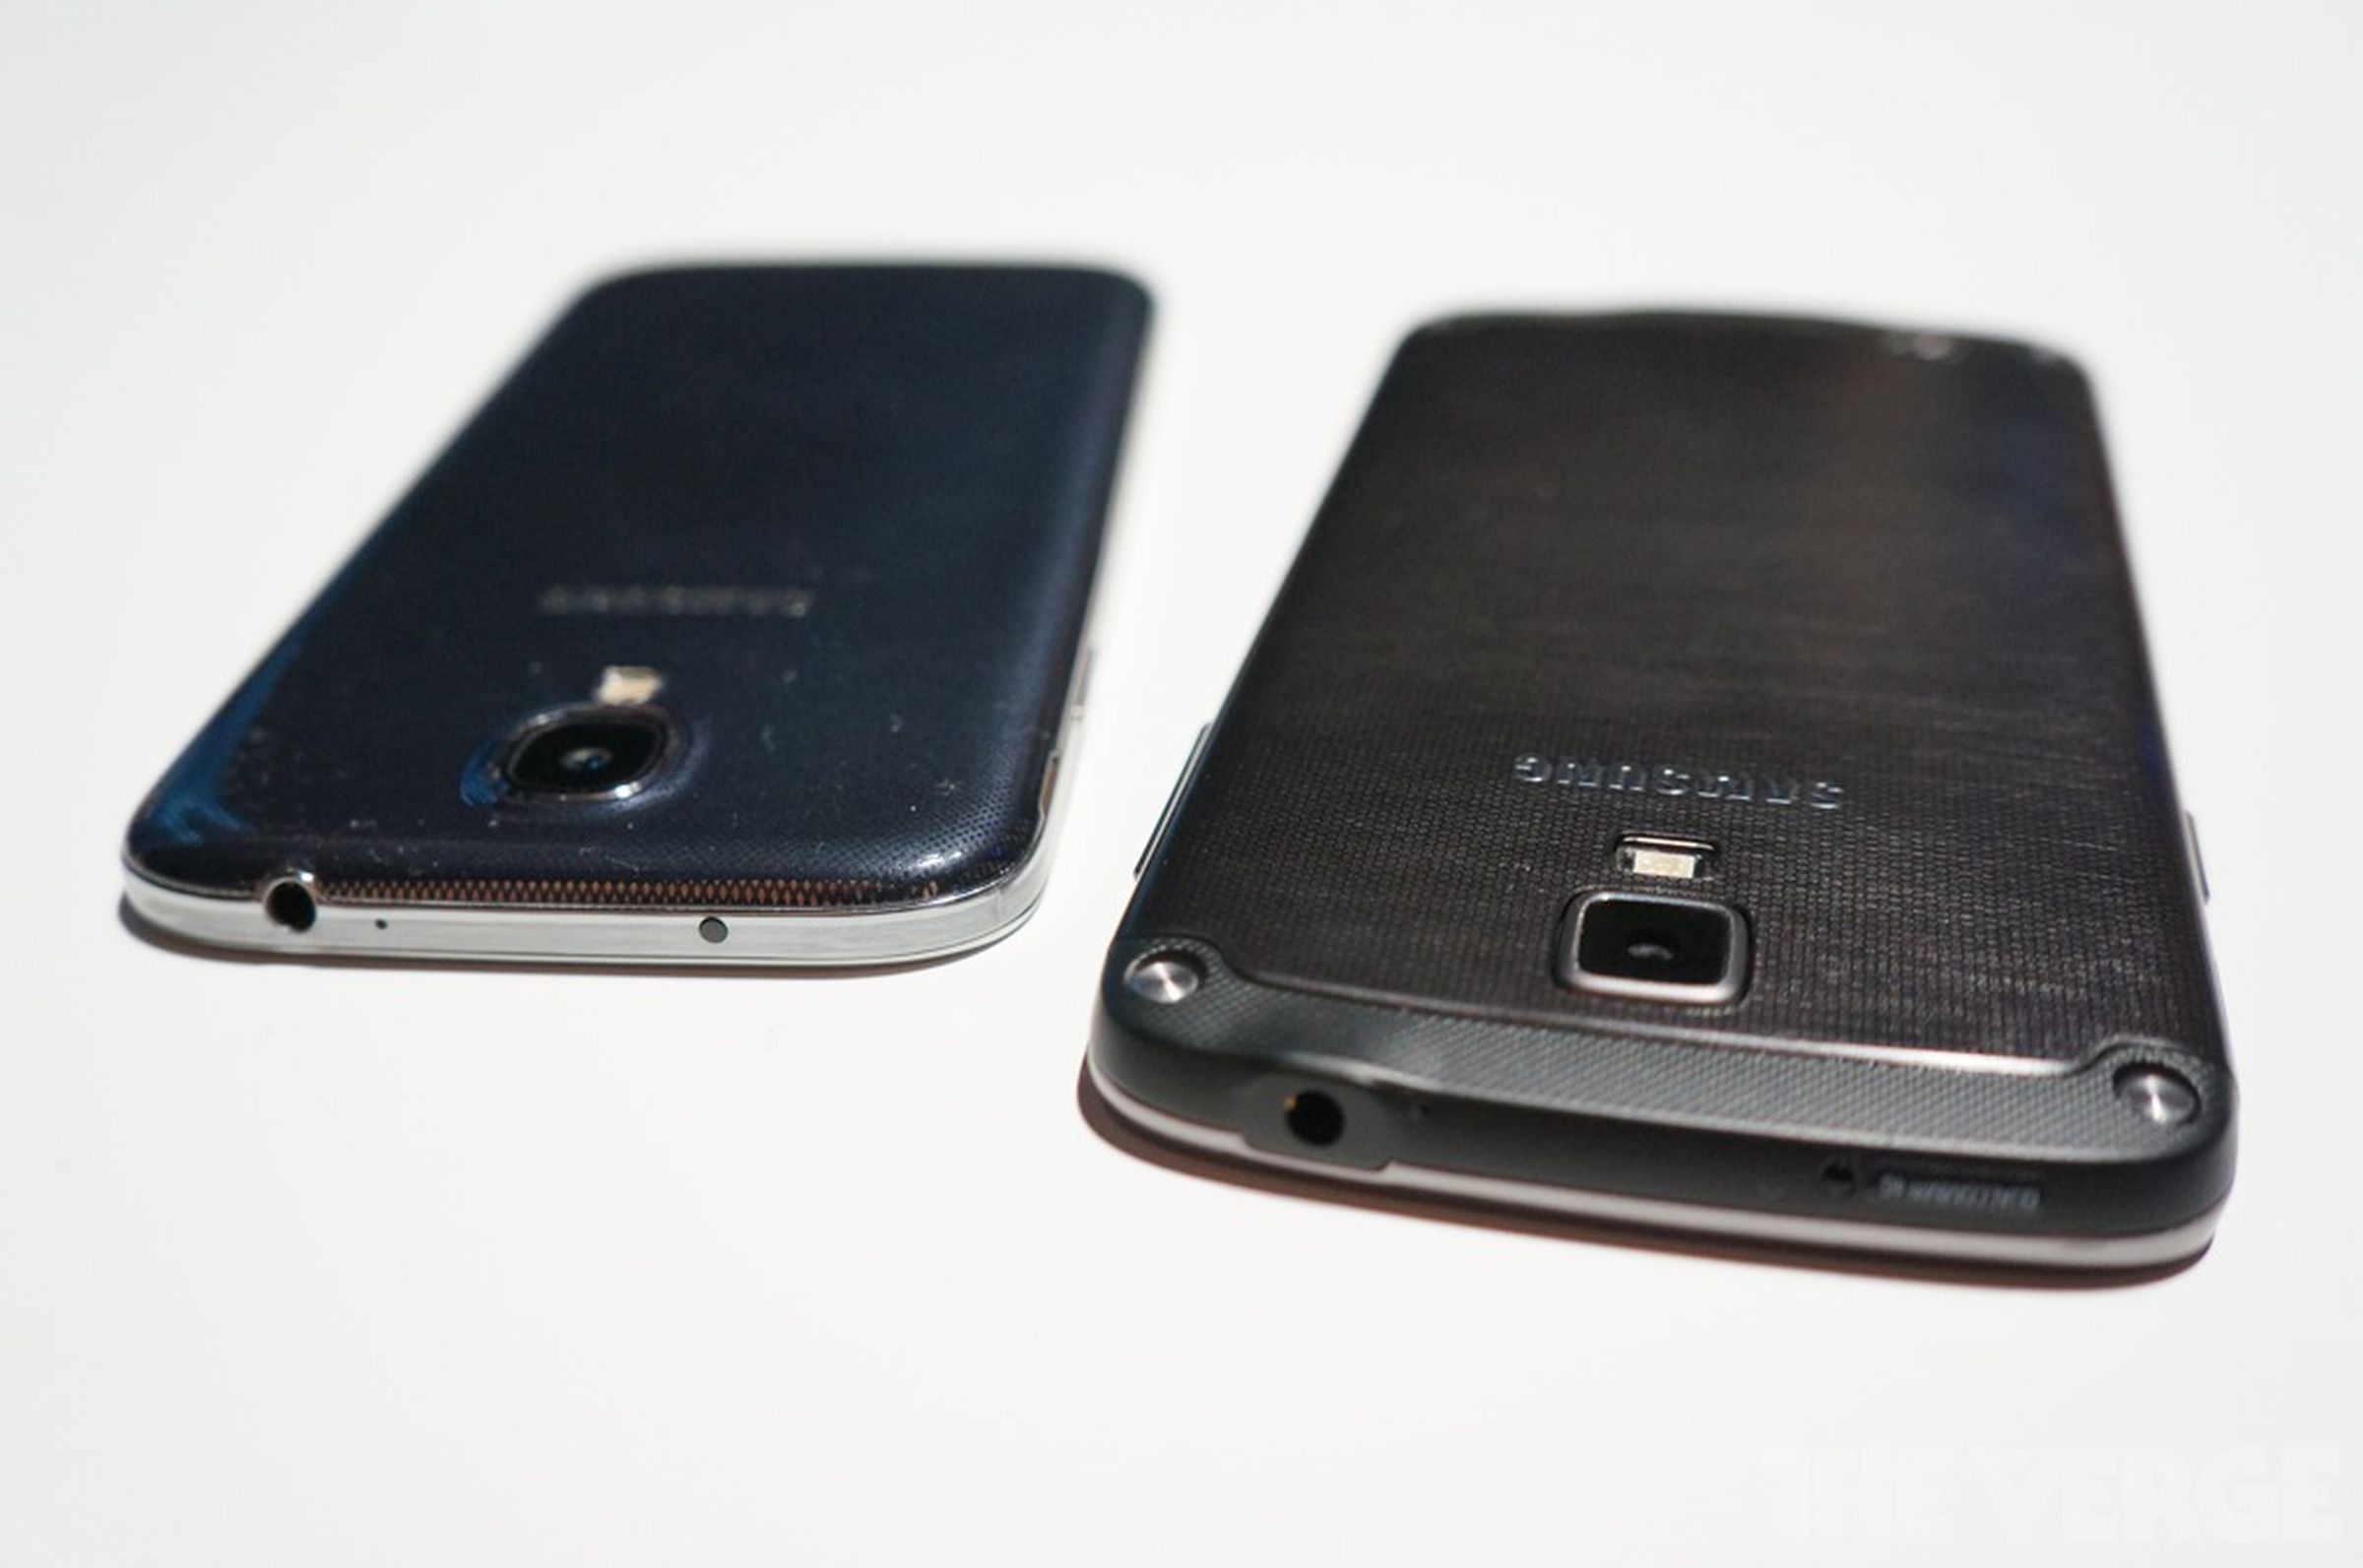 Galaxy S4 Active vs. Galaxy S4